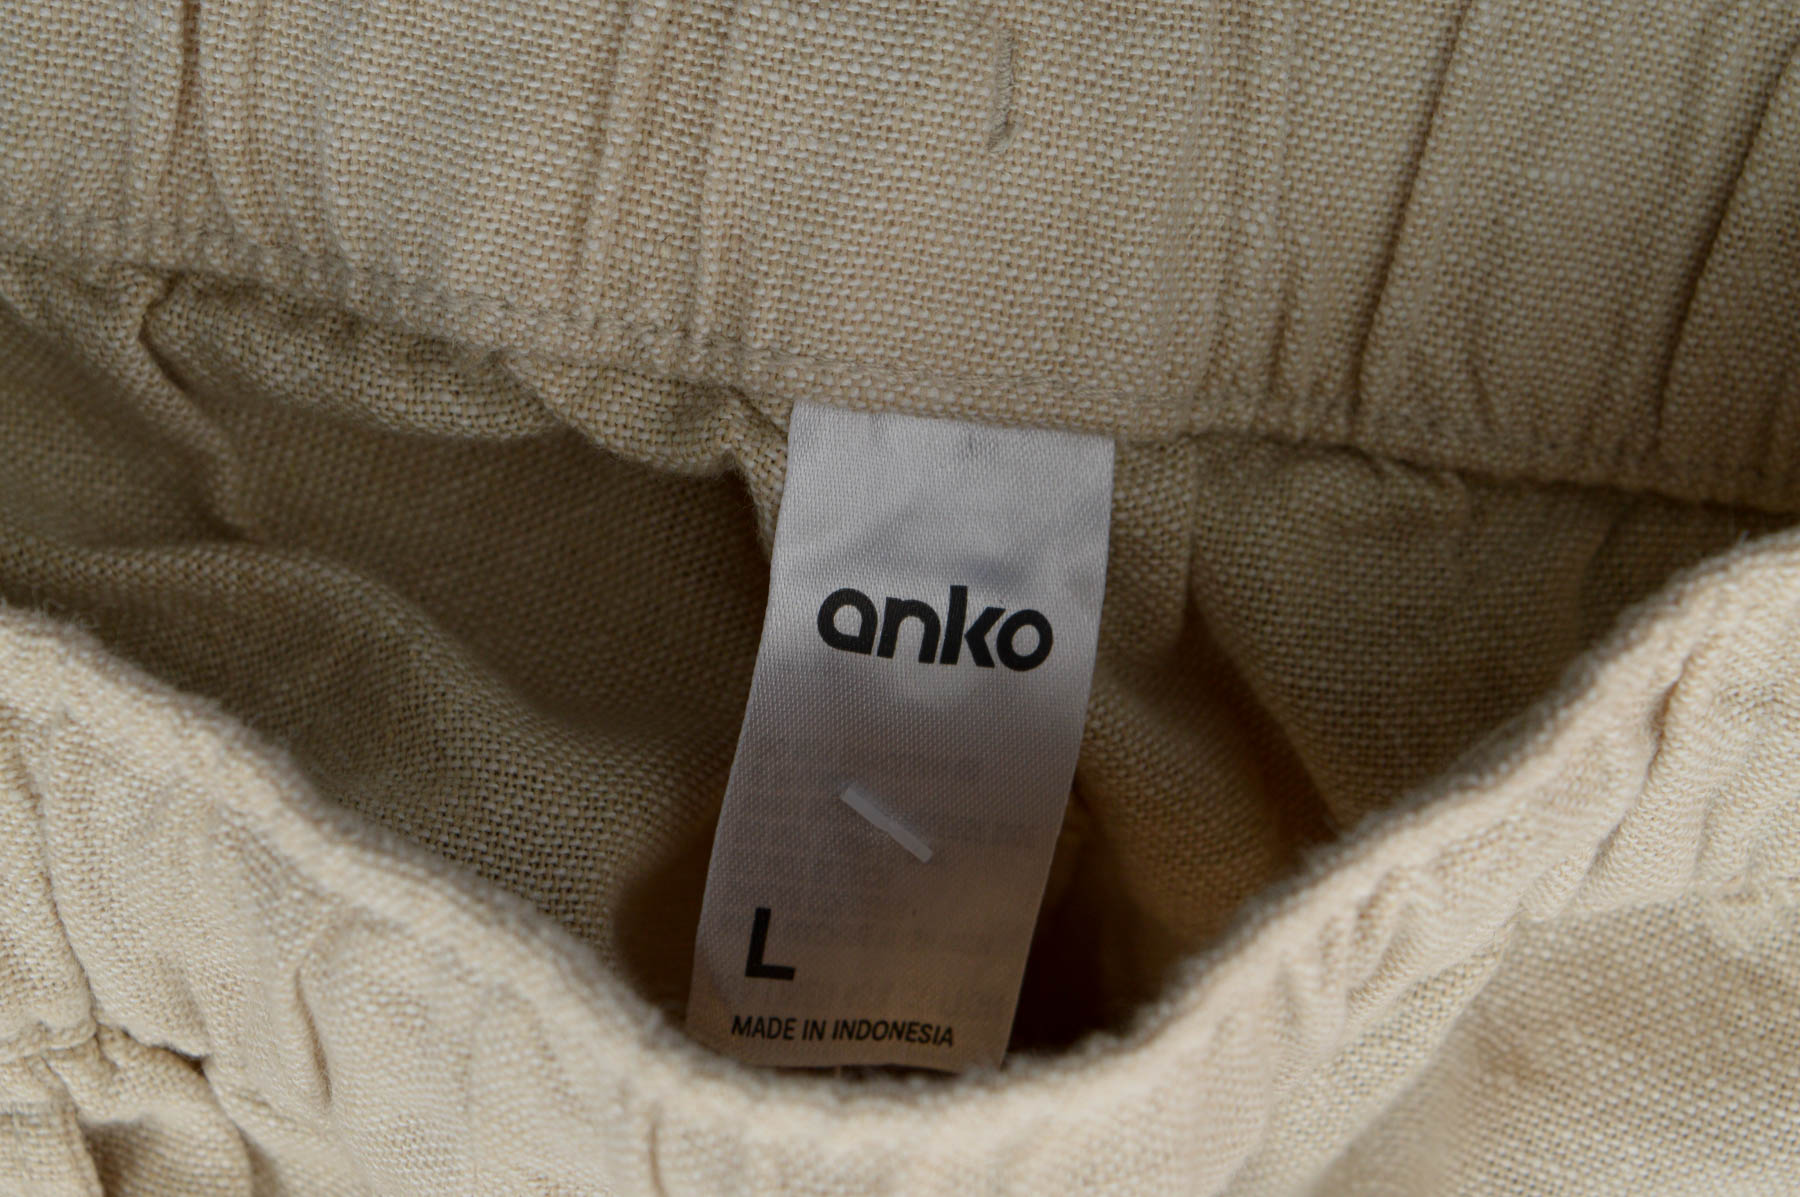 Pantalon pentru bărbați - Anko - 2